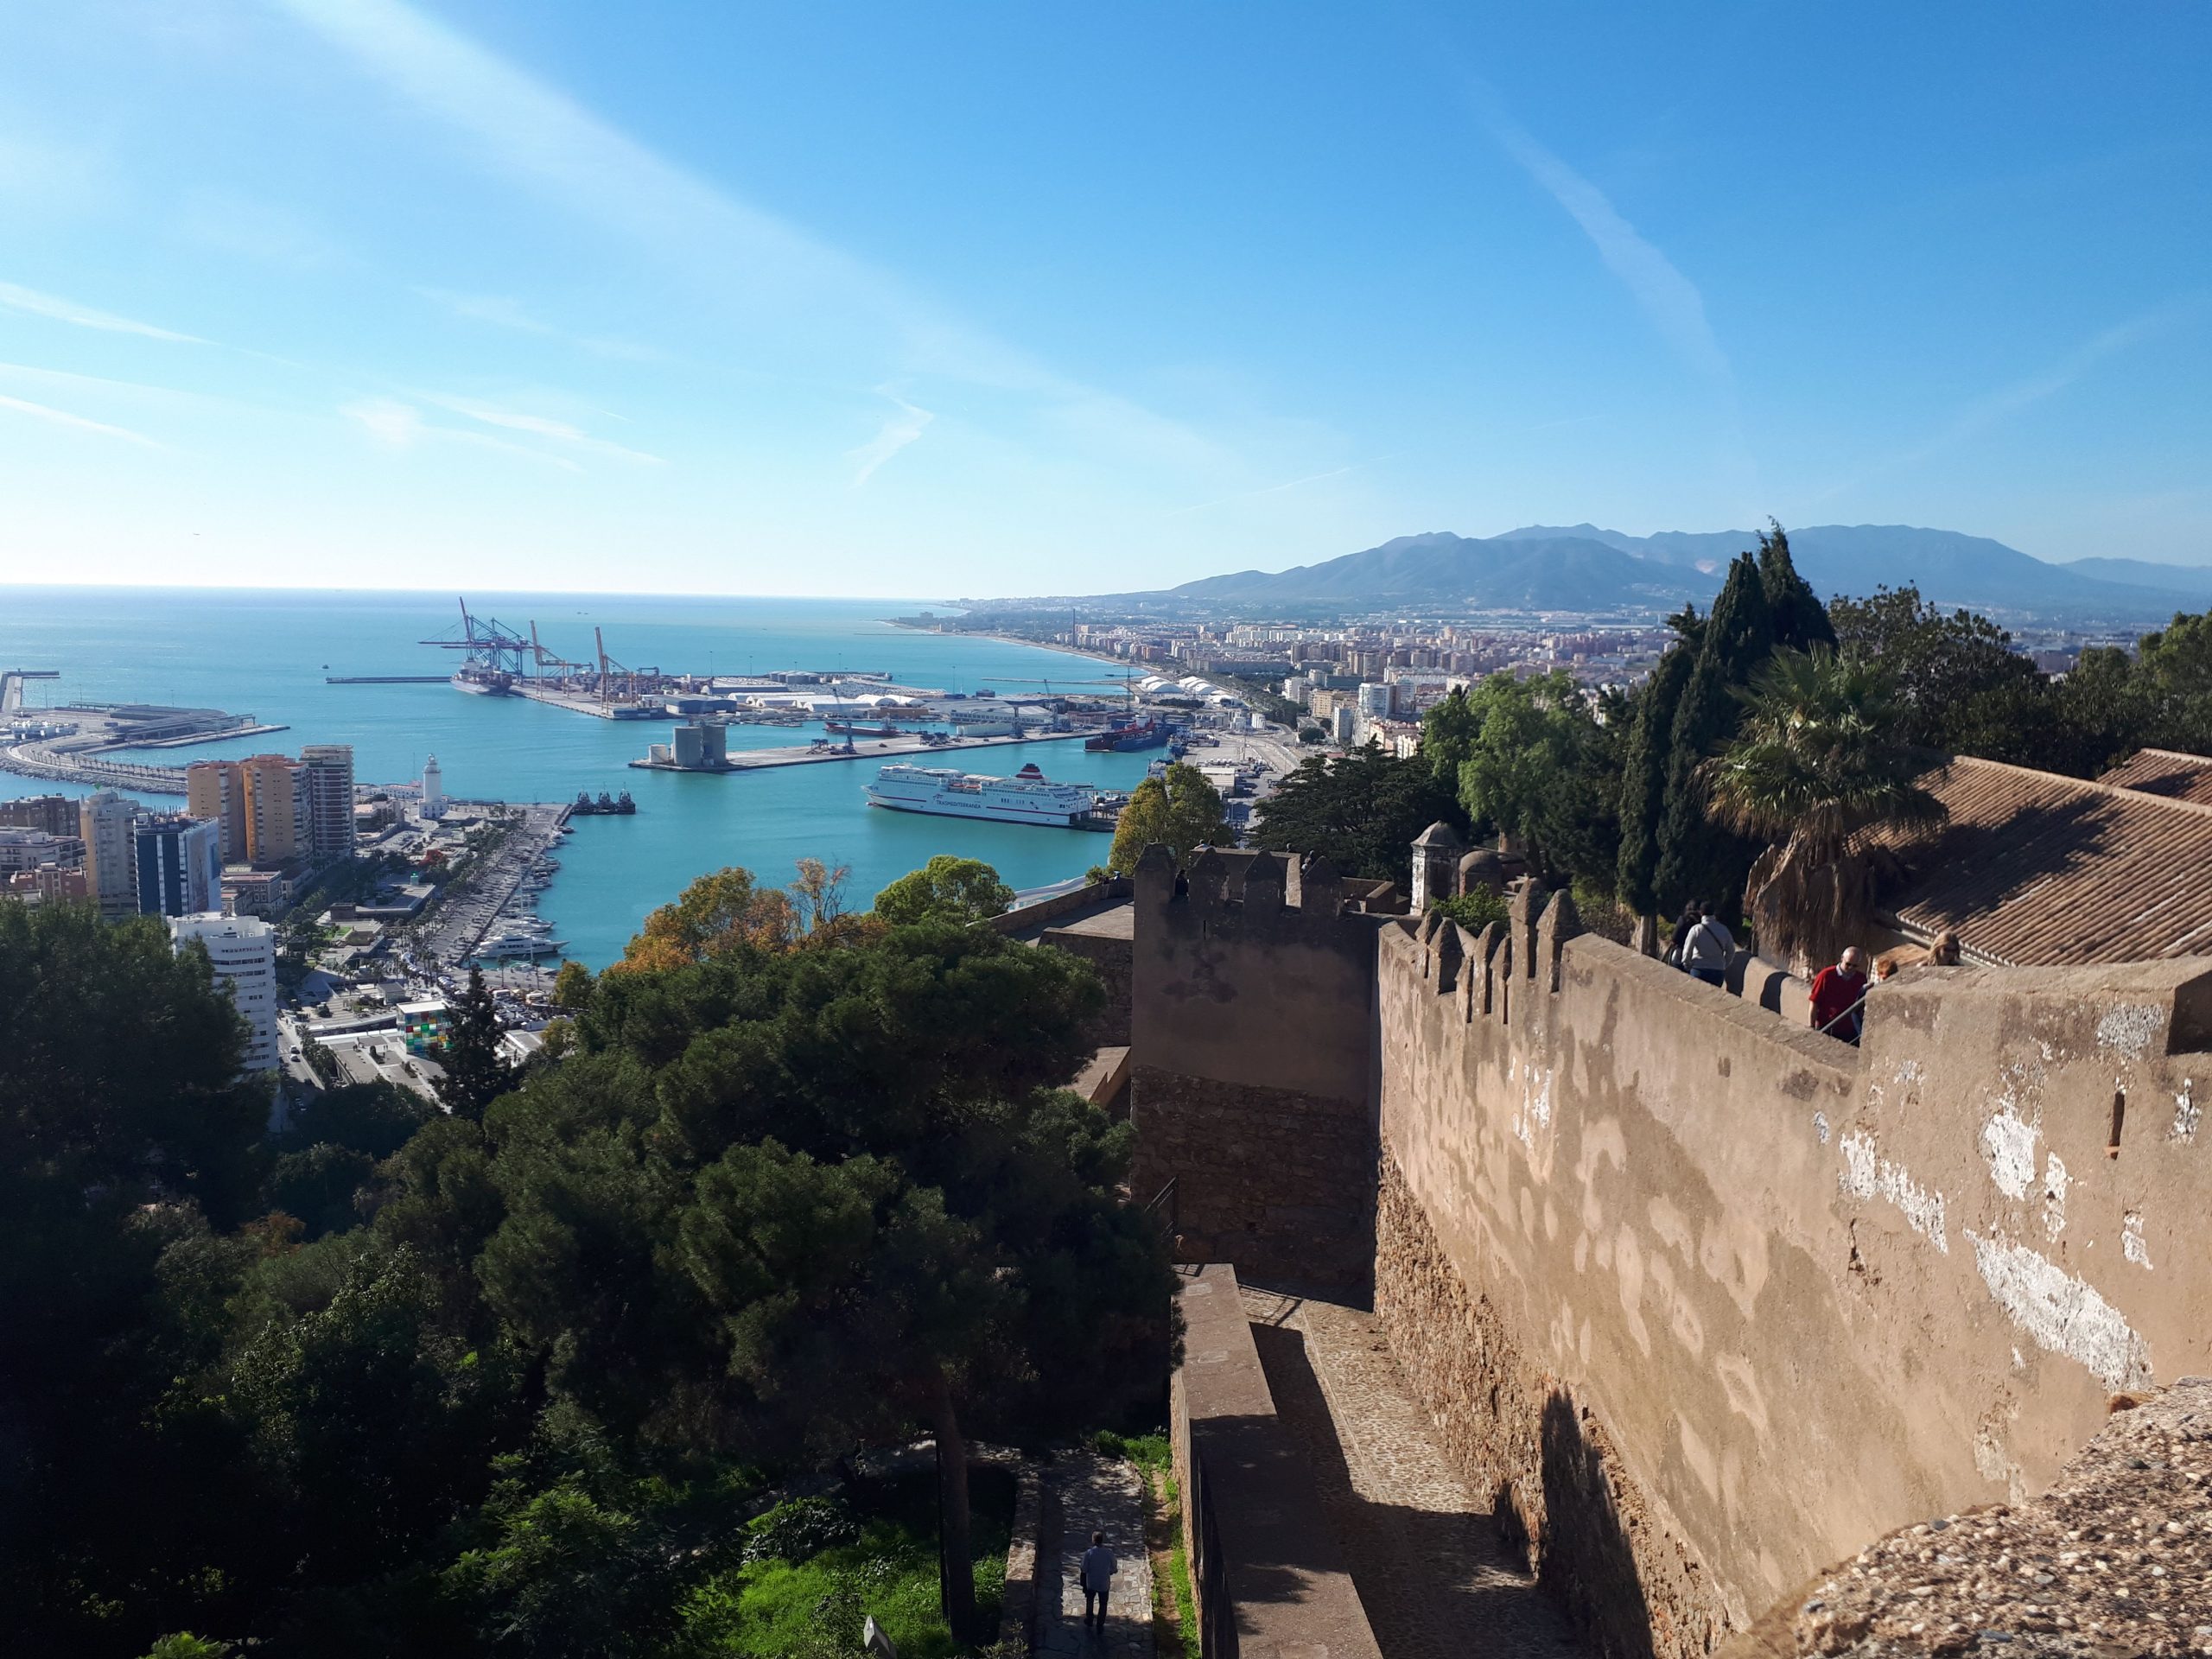 Malaga port from Gibralfaro Castle